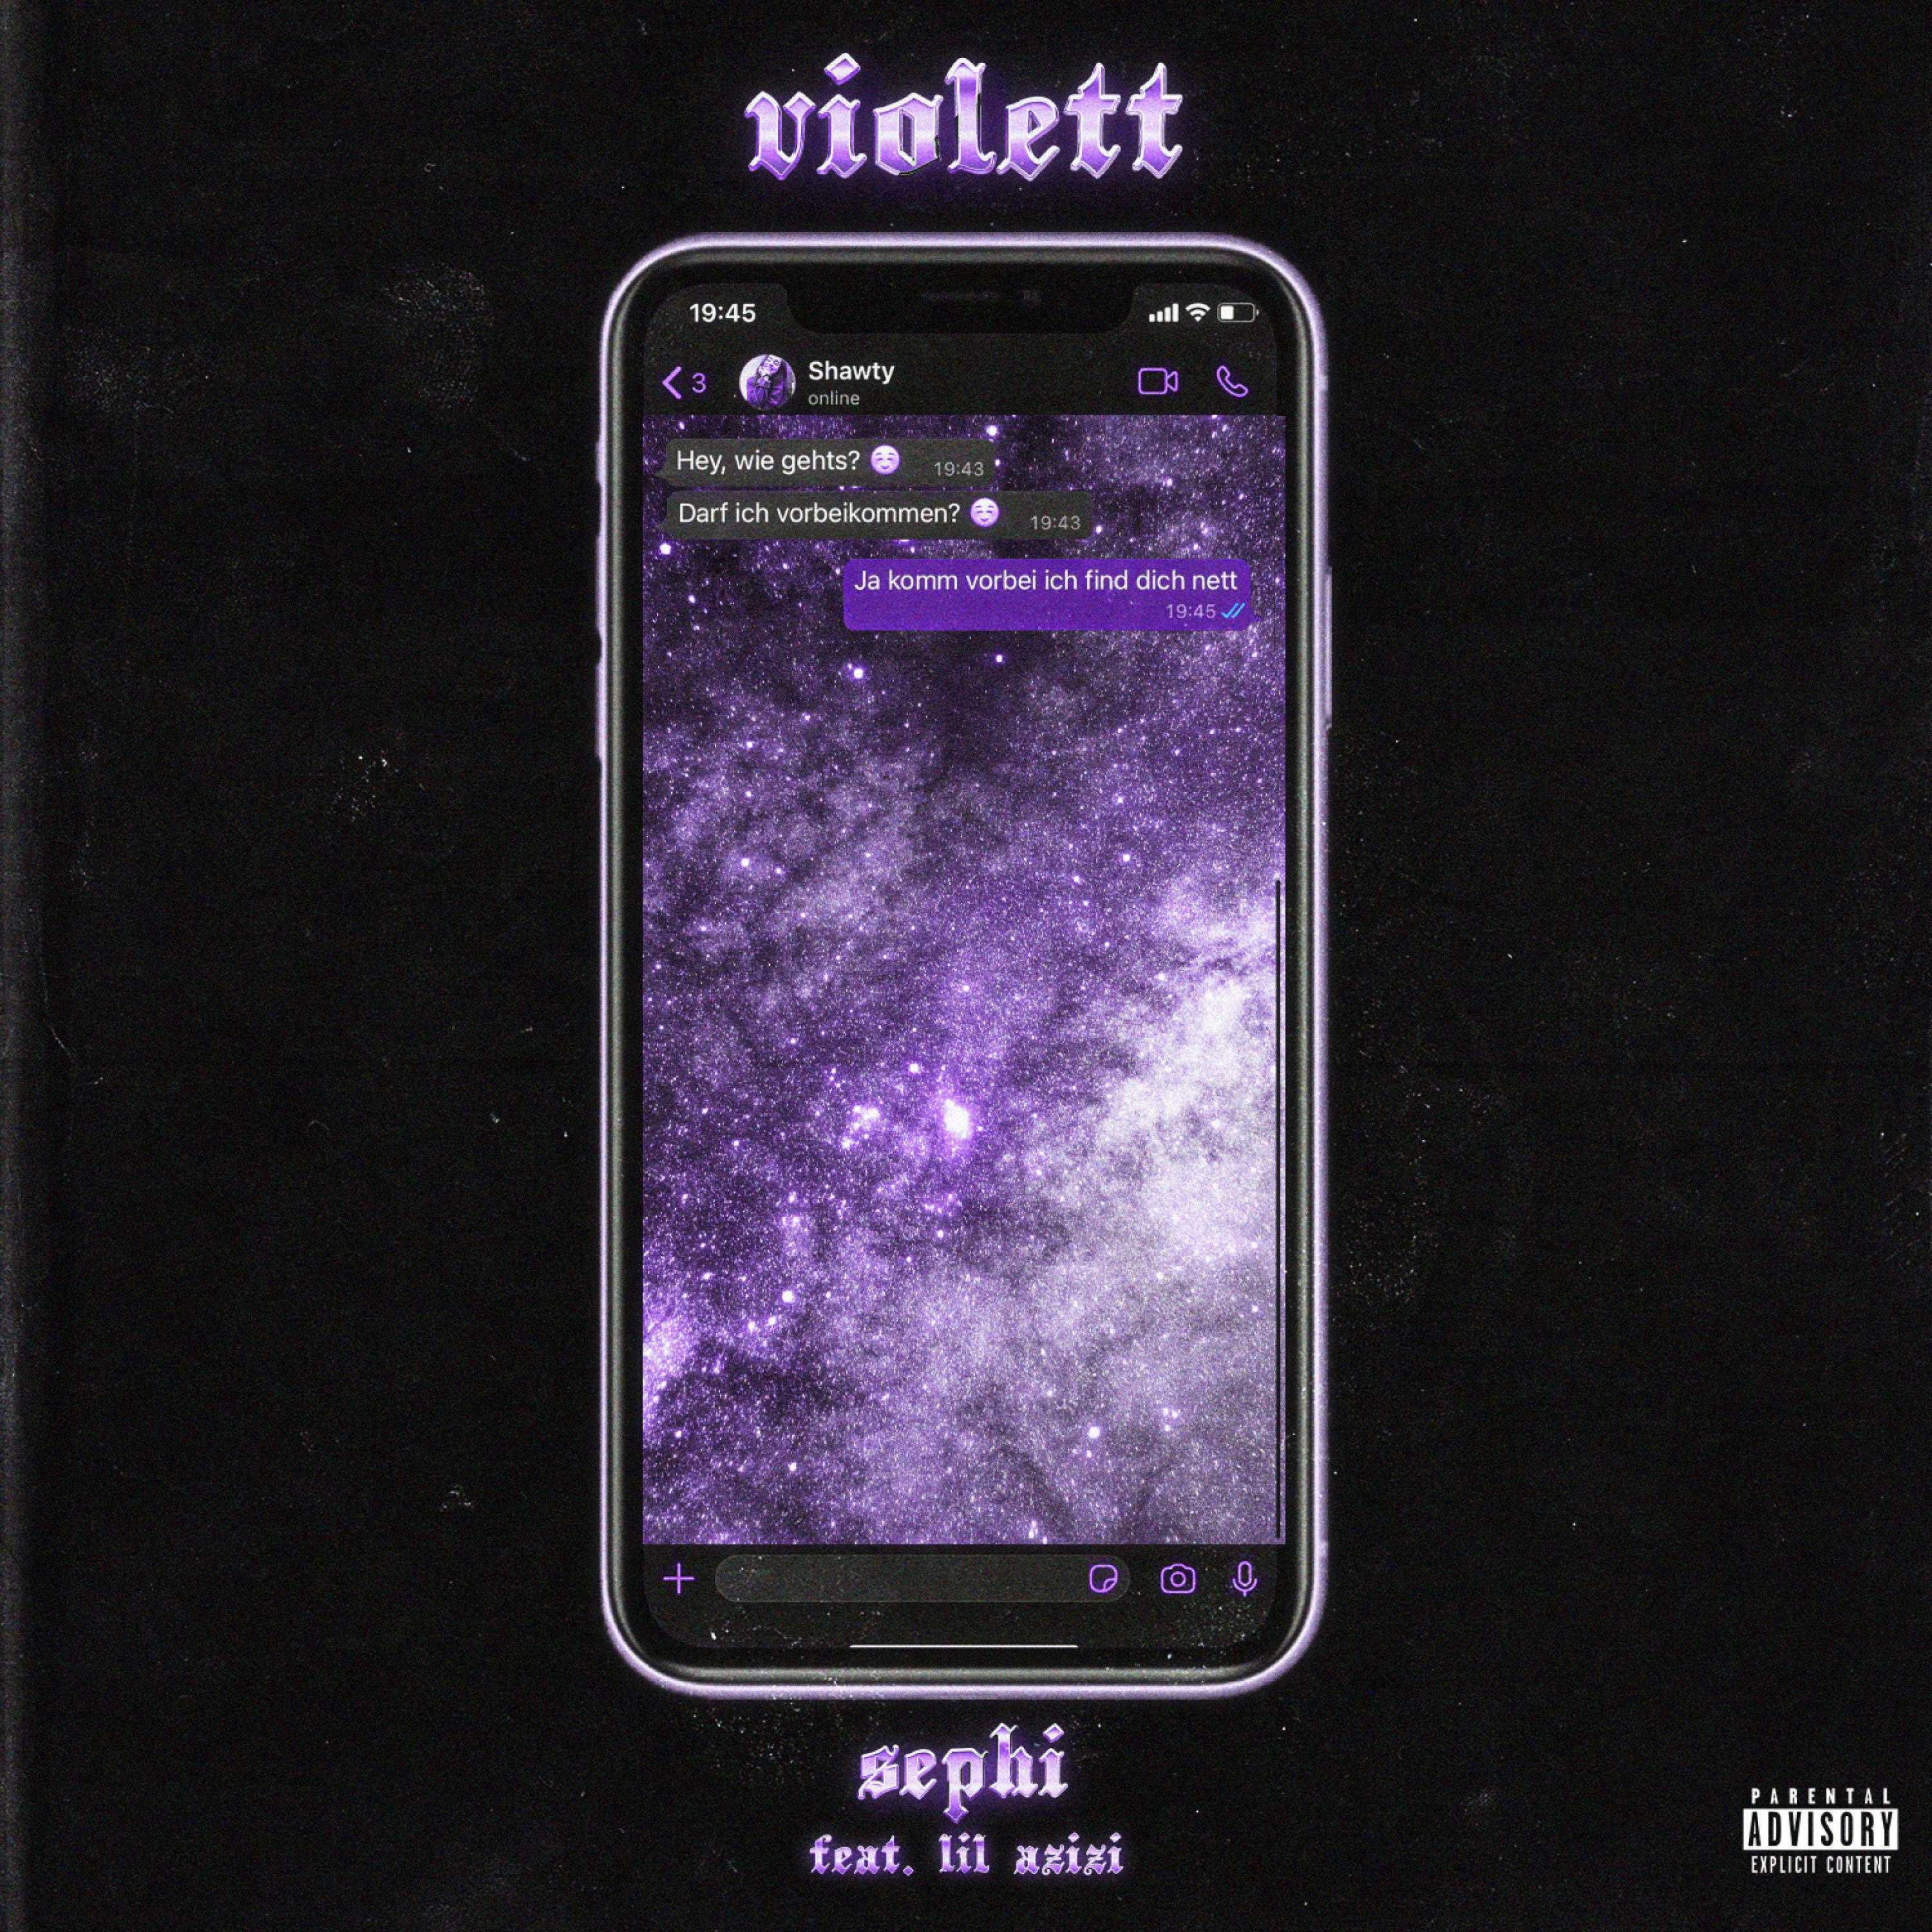 Sephi - Violett